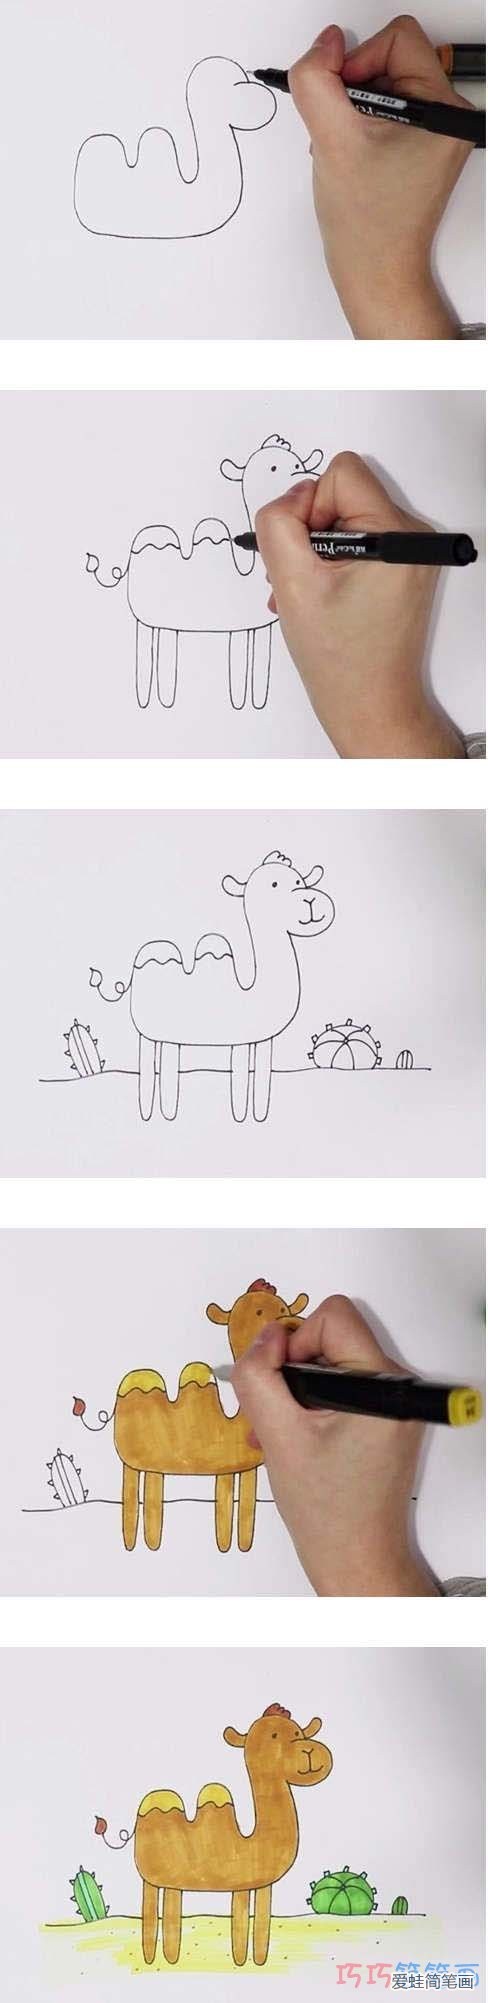 骆驼的画法简笔图片